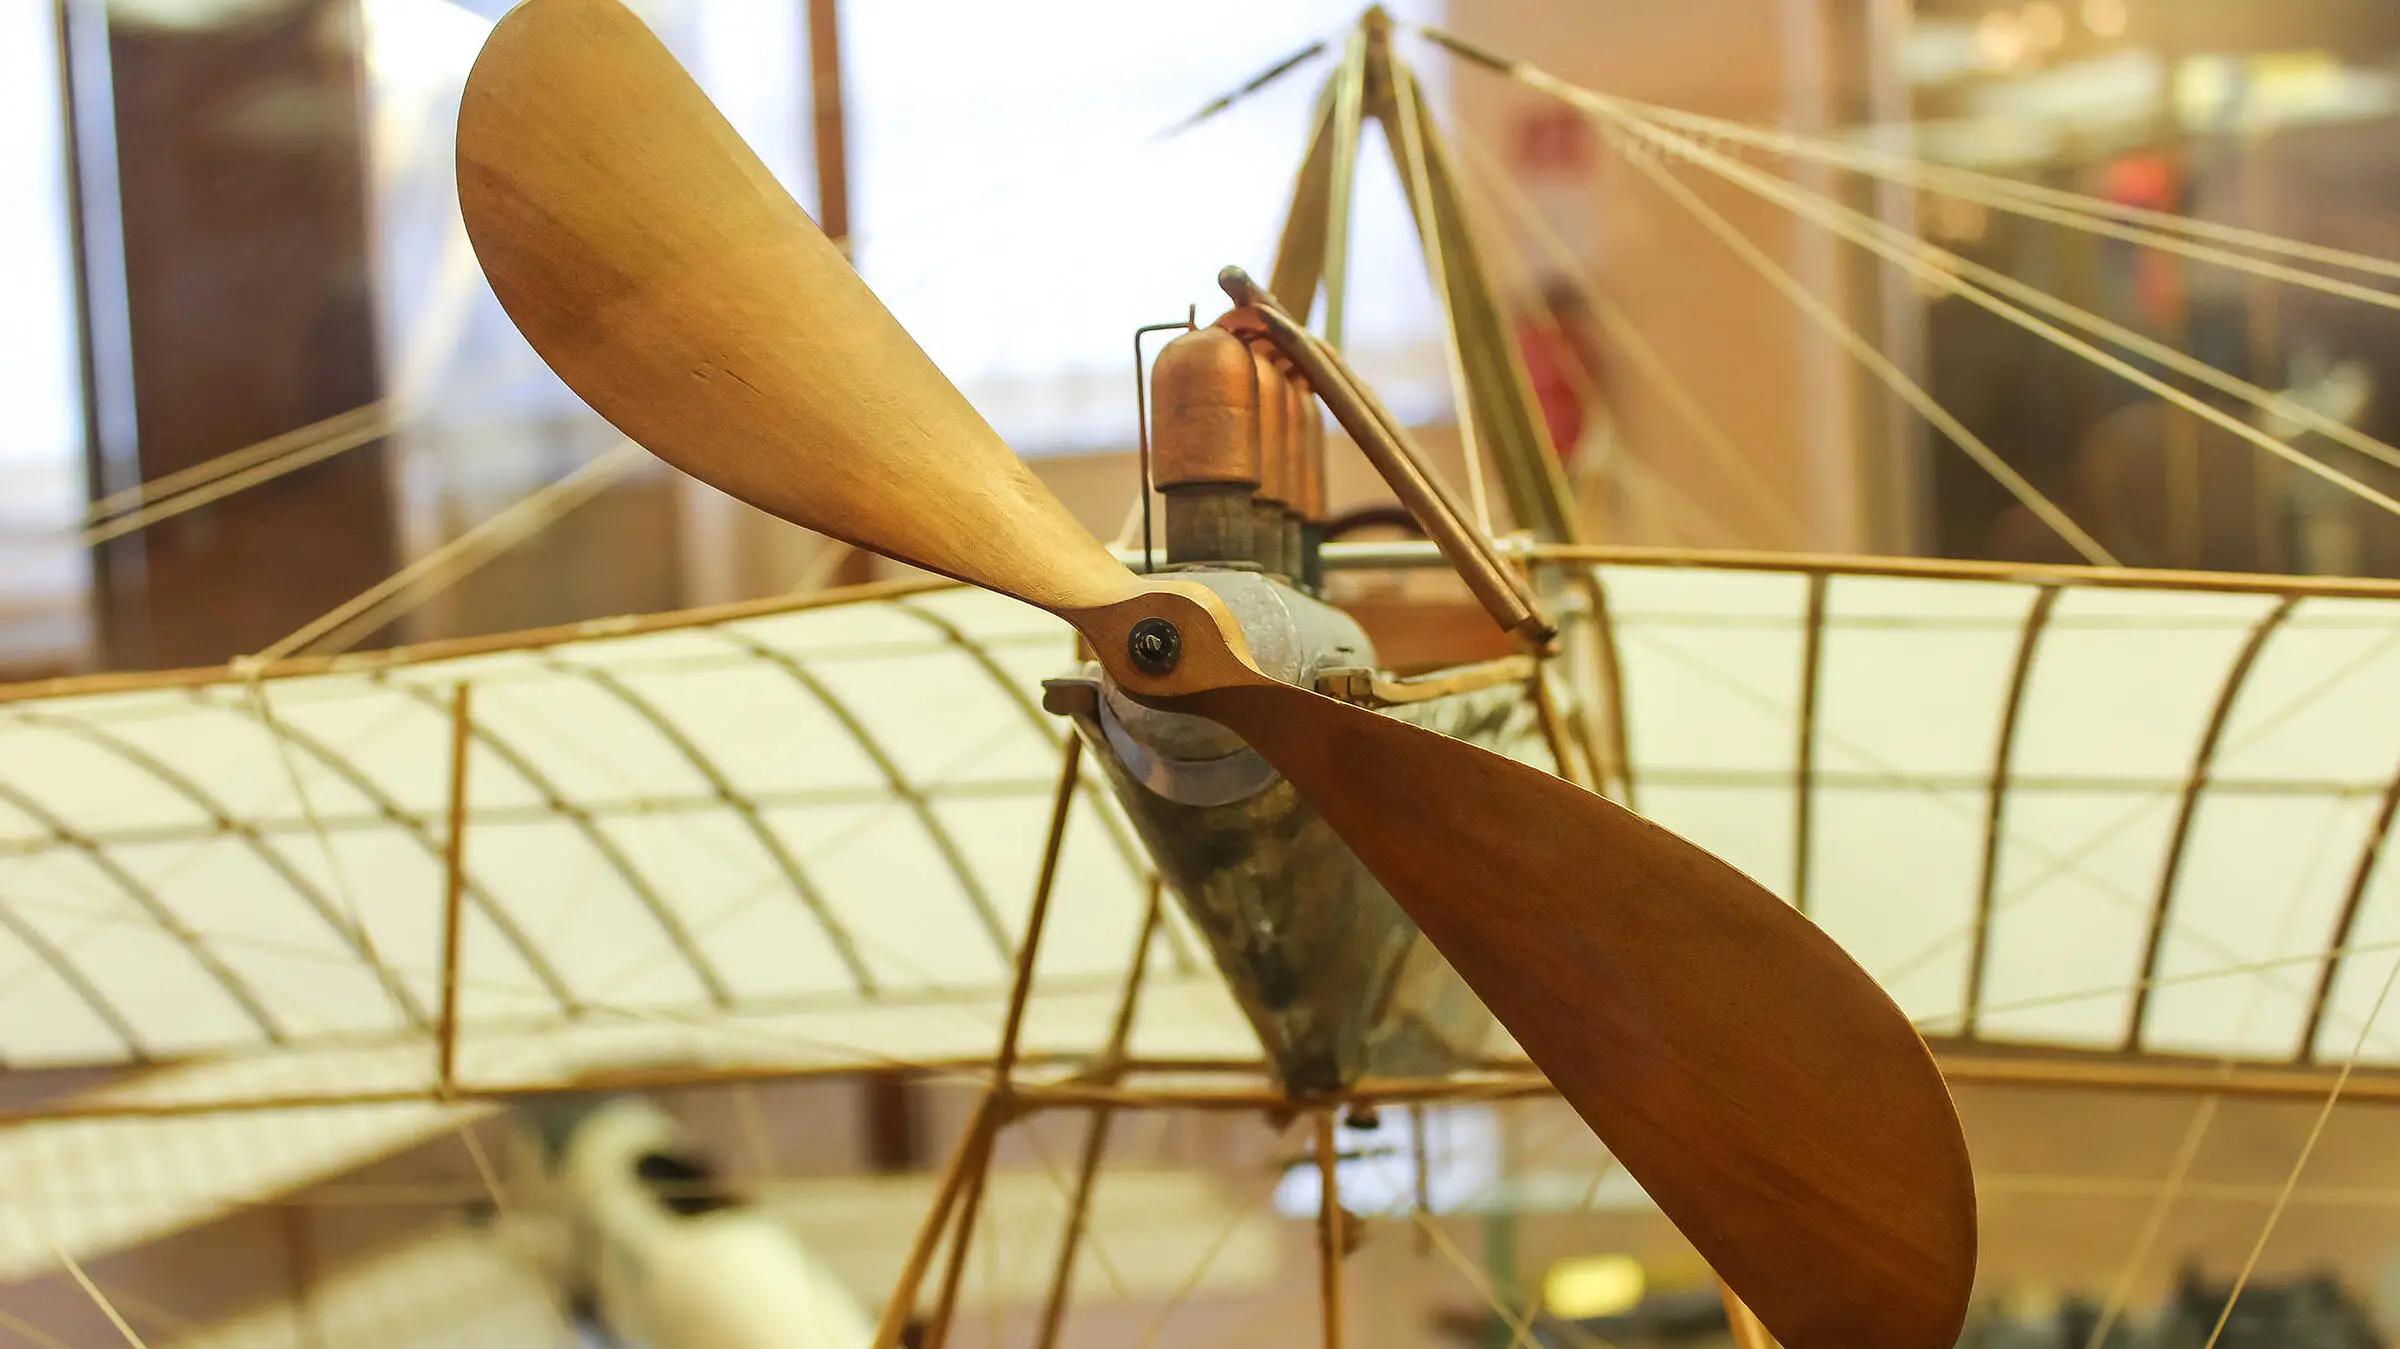 Detailierte Ansicht von einem Holzflugzeug